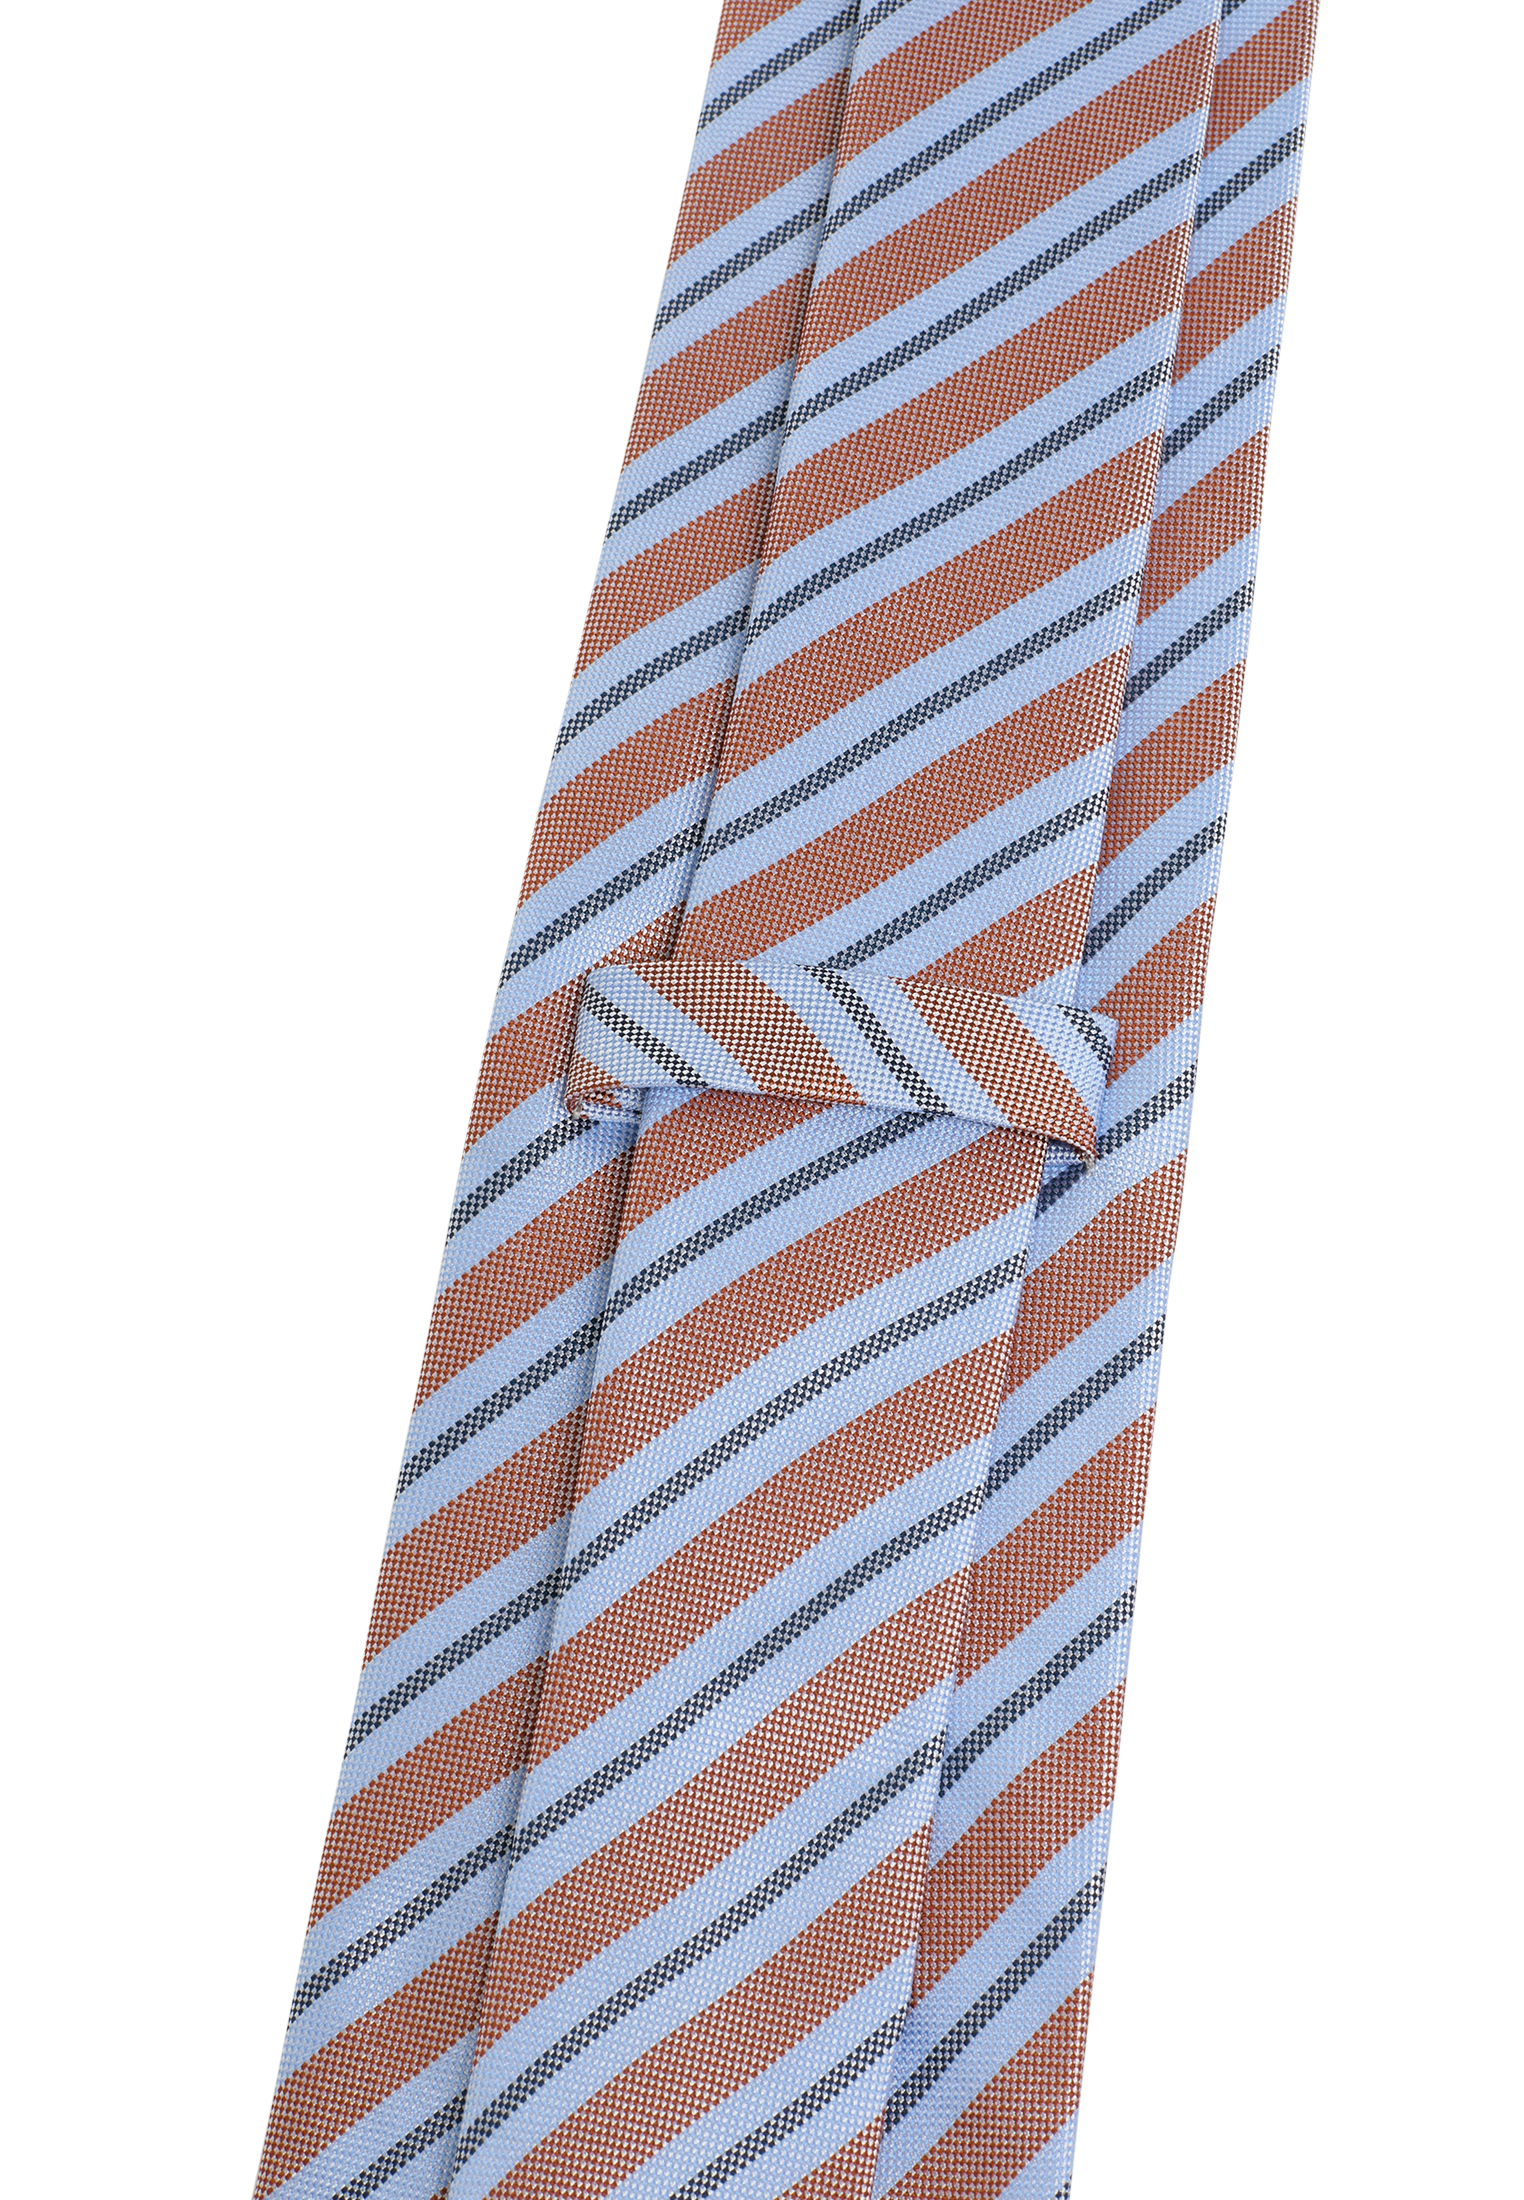 Krawatte in hellblau/orange gemustert 142 hellblau/orange | | 1AC02006-81-33-142 